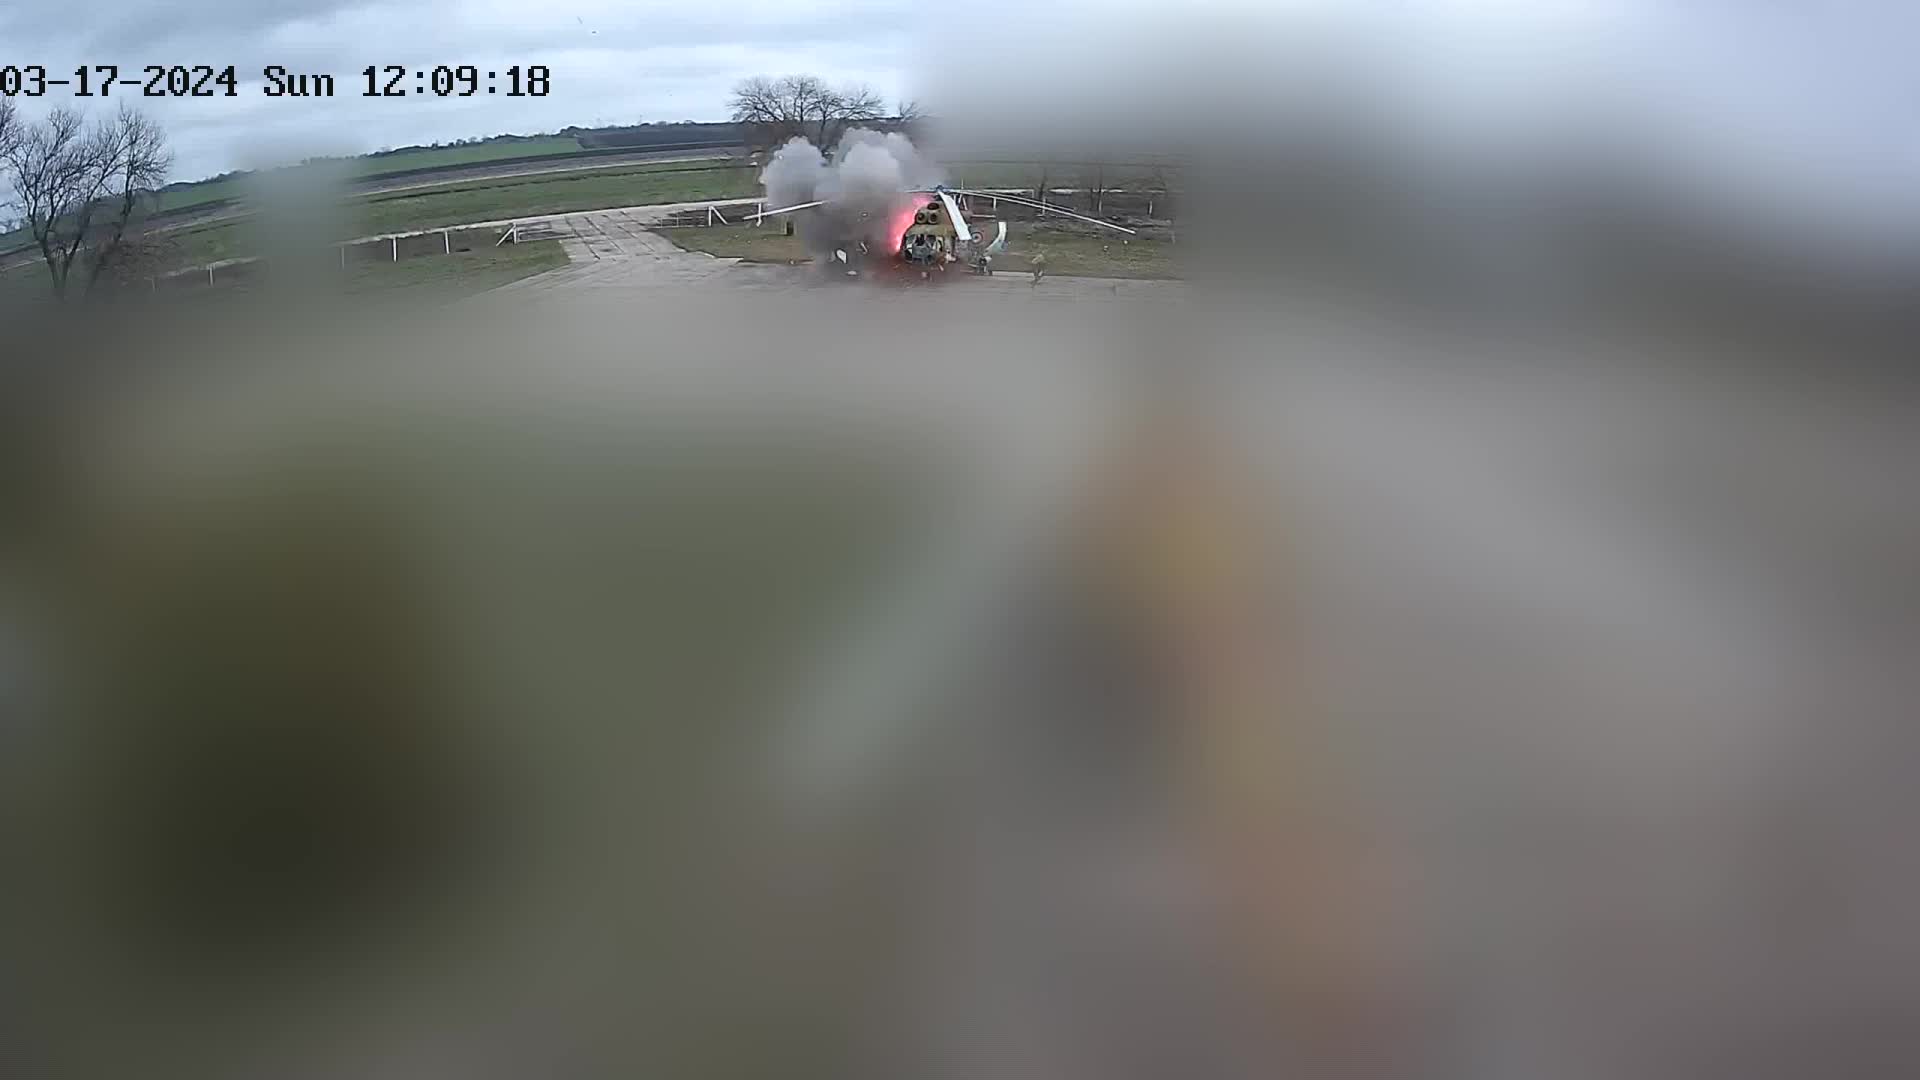 فيديو لطائرة هليكوبتر من طراز Mi-8 دمرتها طائرة بدون طيار في ترانسنيستريا